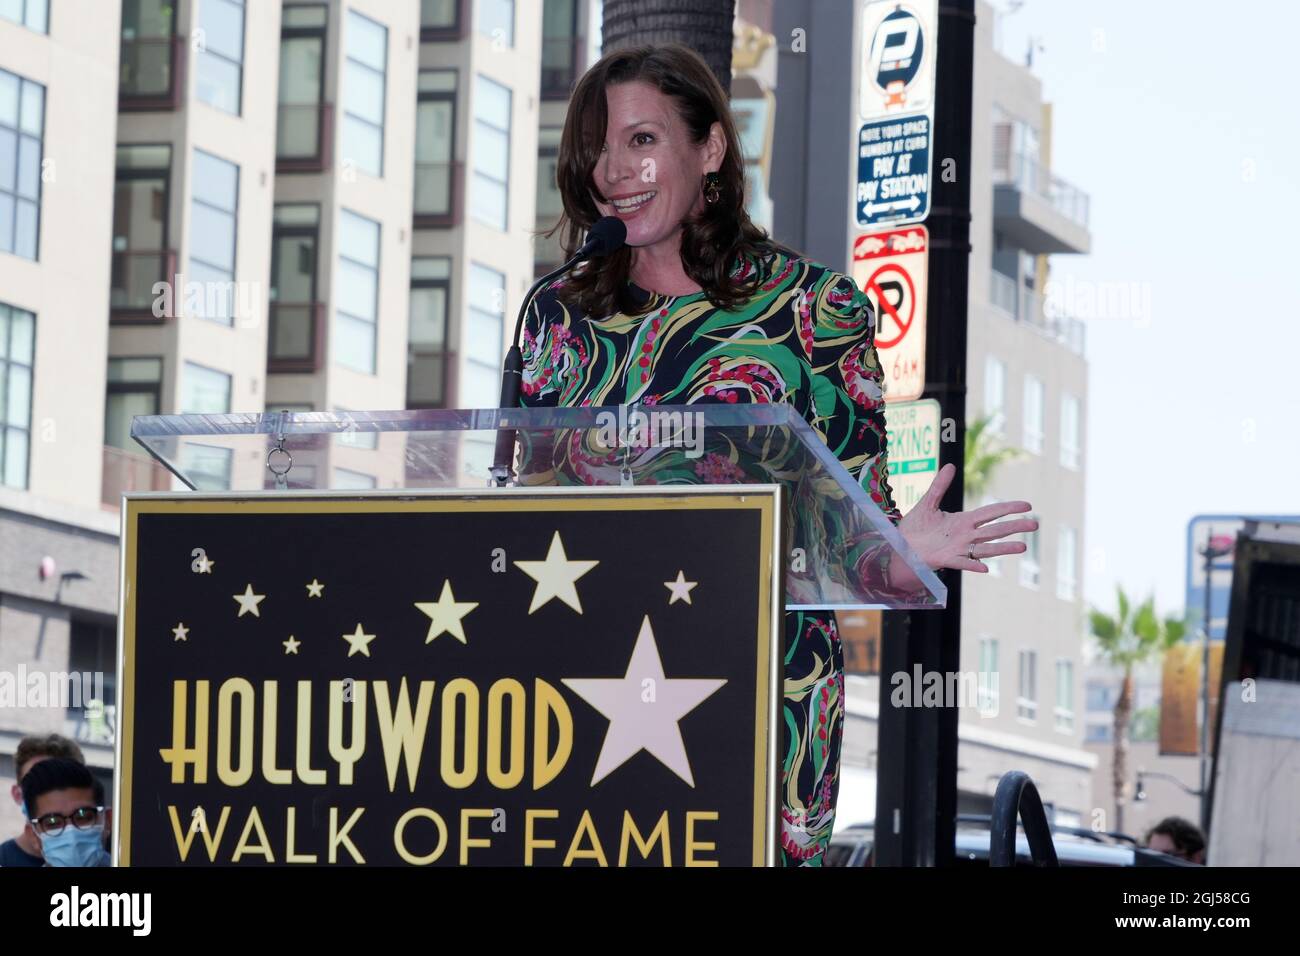 Hollywood Walk of Fame presidente del bordo Nicole Mihalka parla ad una cerimonia per svelare l'inizio della personalità radio Kurt Alexander aka Big Bo. Mer Foto Stock